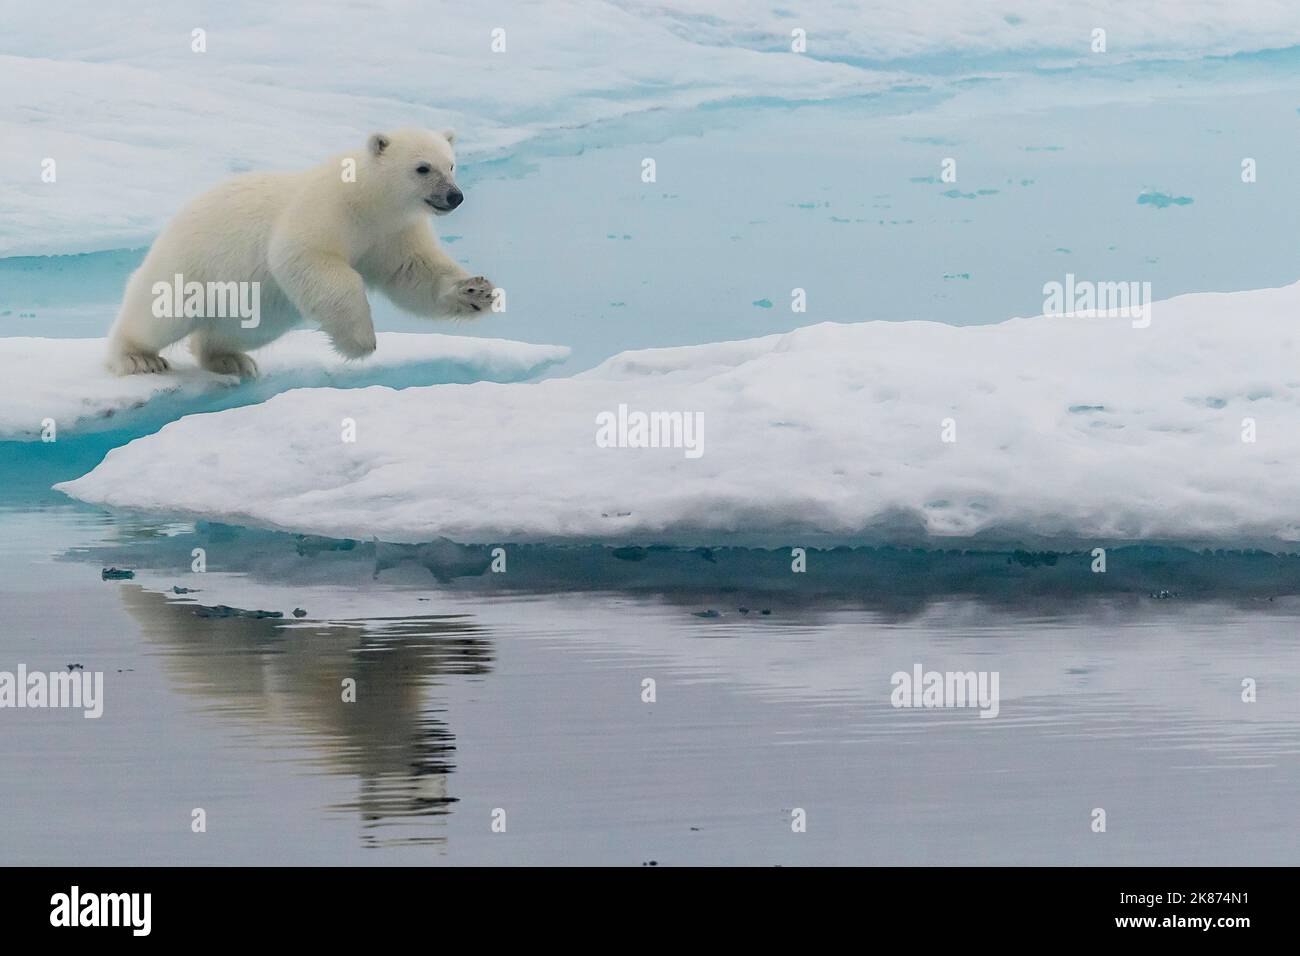 Ours polaire (Ursus maritimus), le cub bondissant sur un floe de glace dans le brouillard du détroit de Davis, au Nunavut, au Canada, en Amérique du Nord Banque D'Images